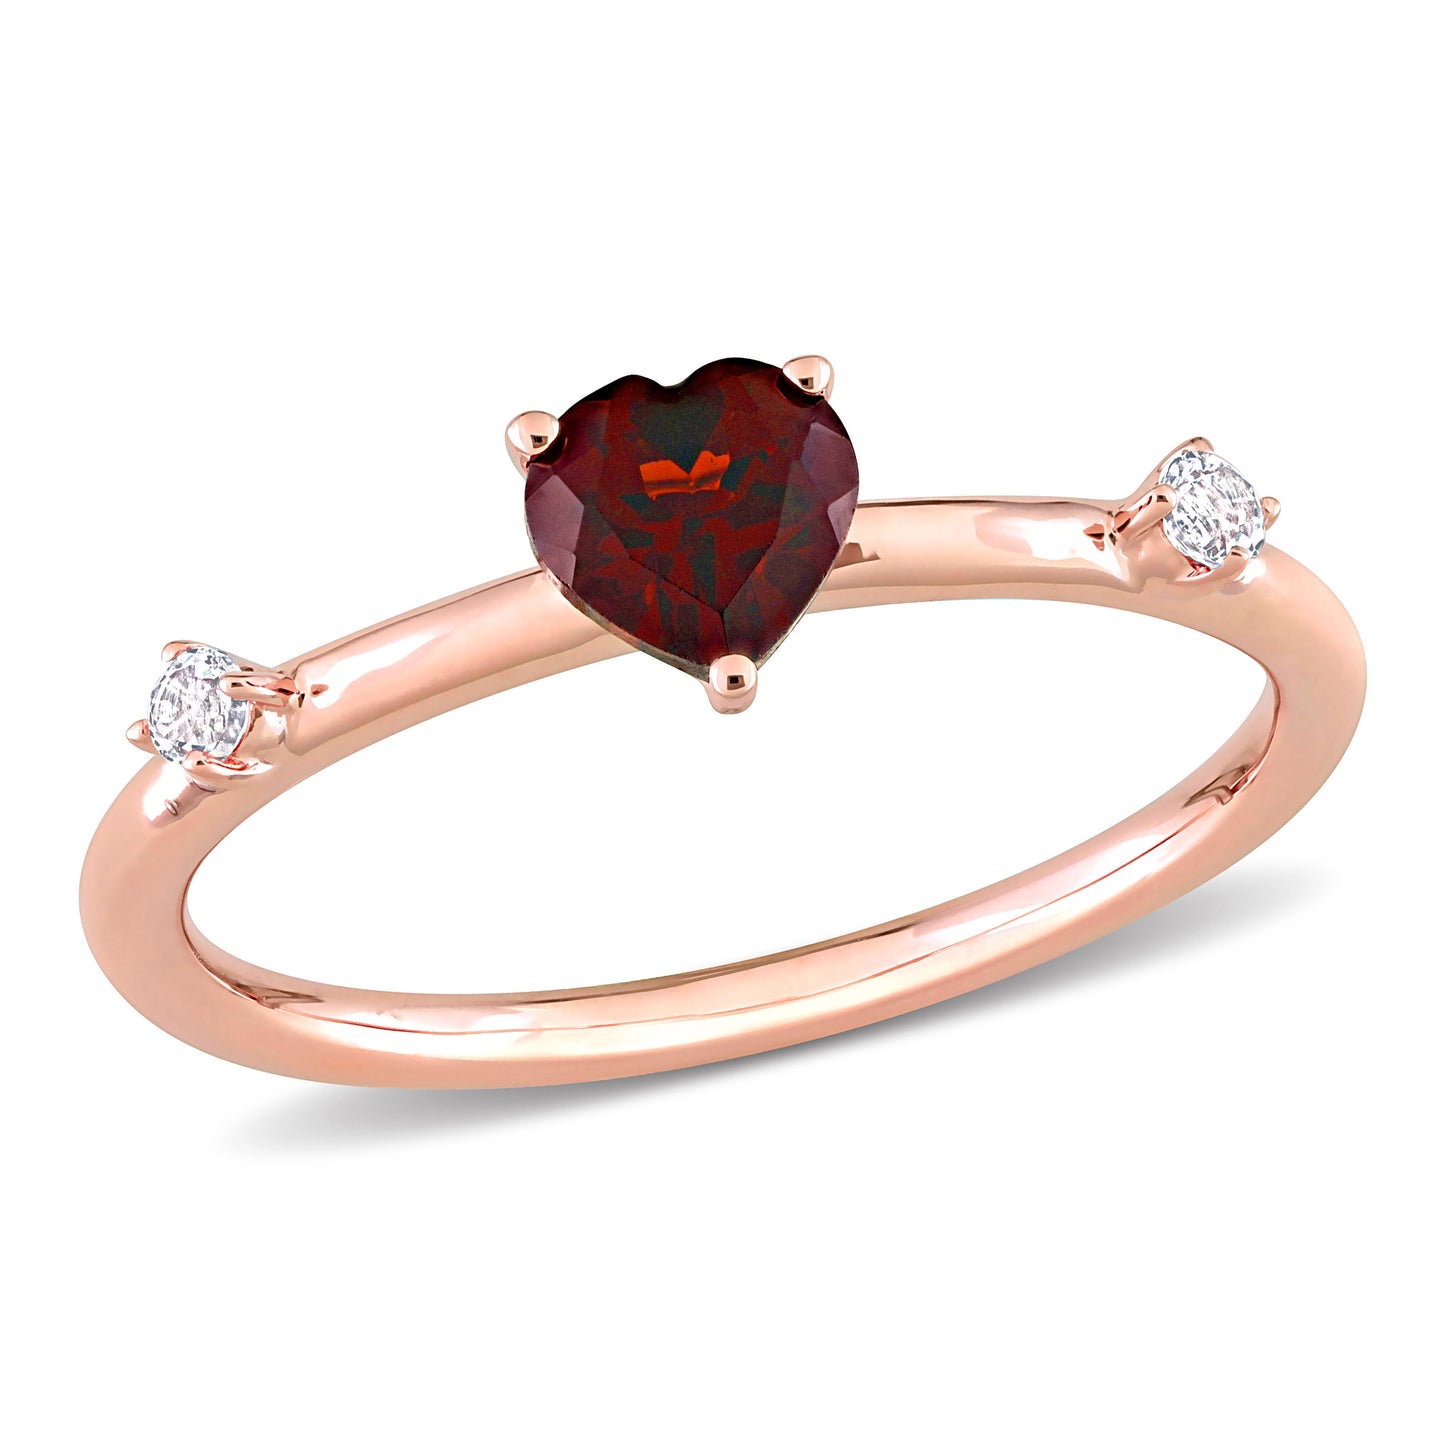 Heart Cut Garnet & White Topaz Ring in 10k Rose Gold